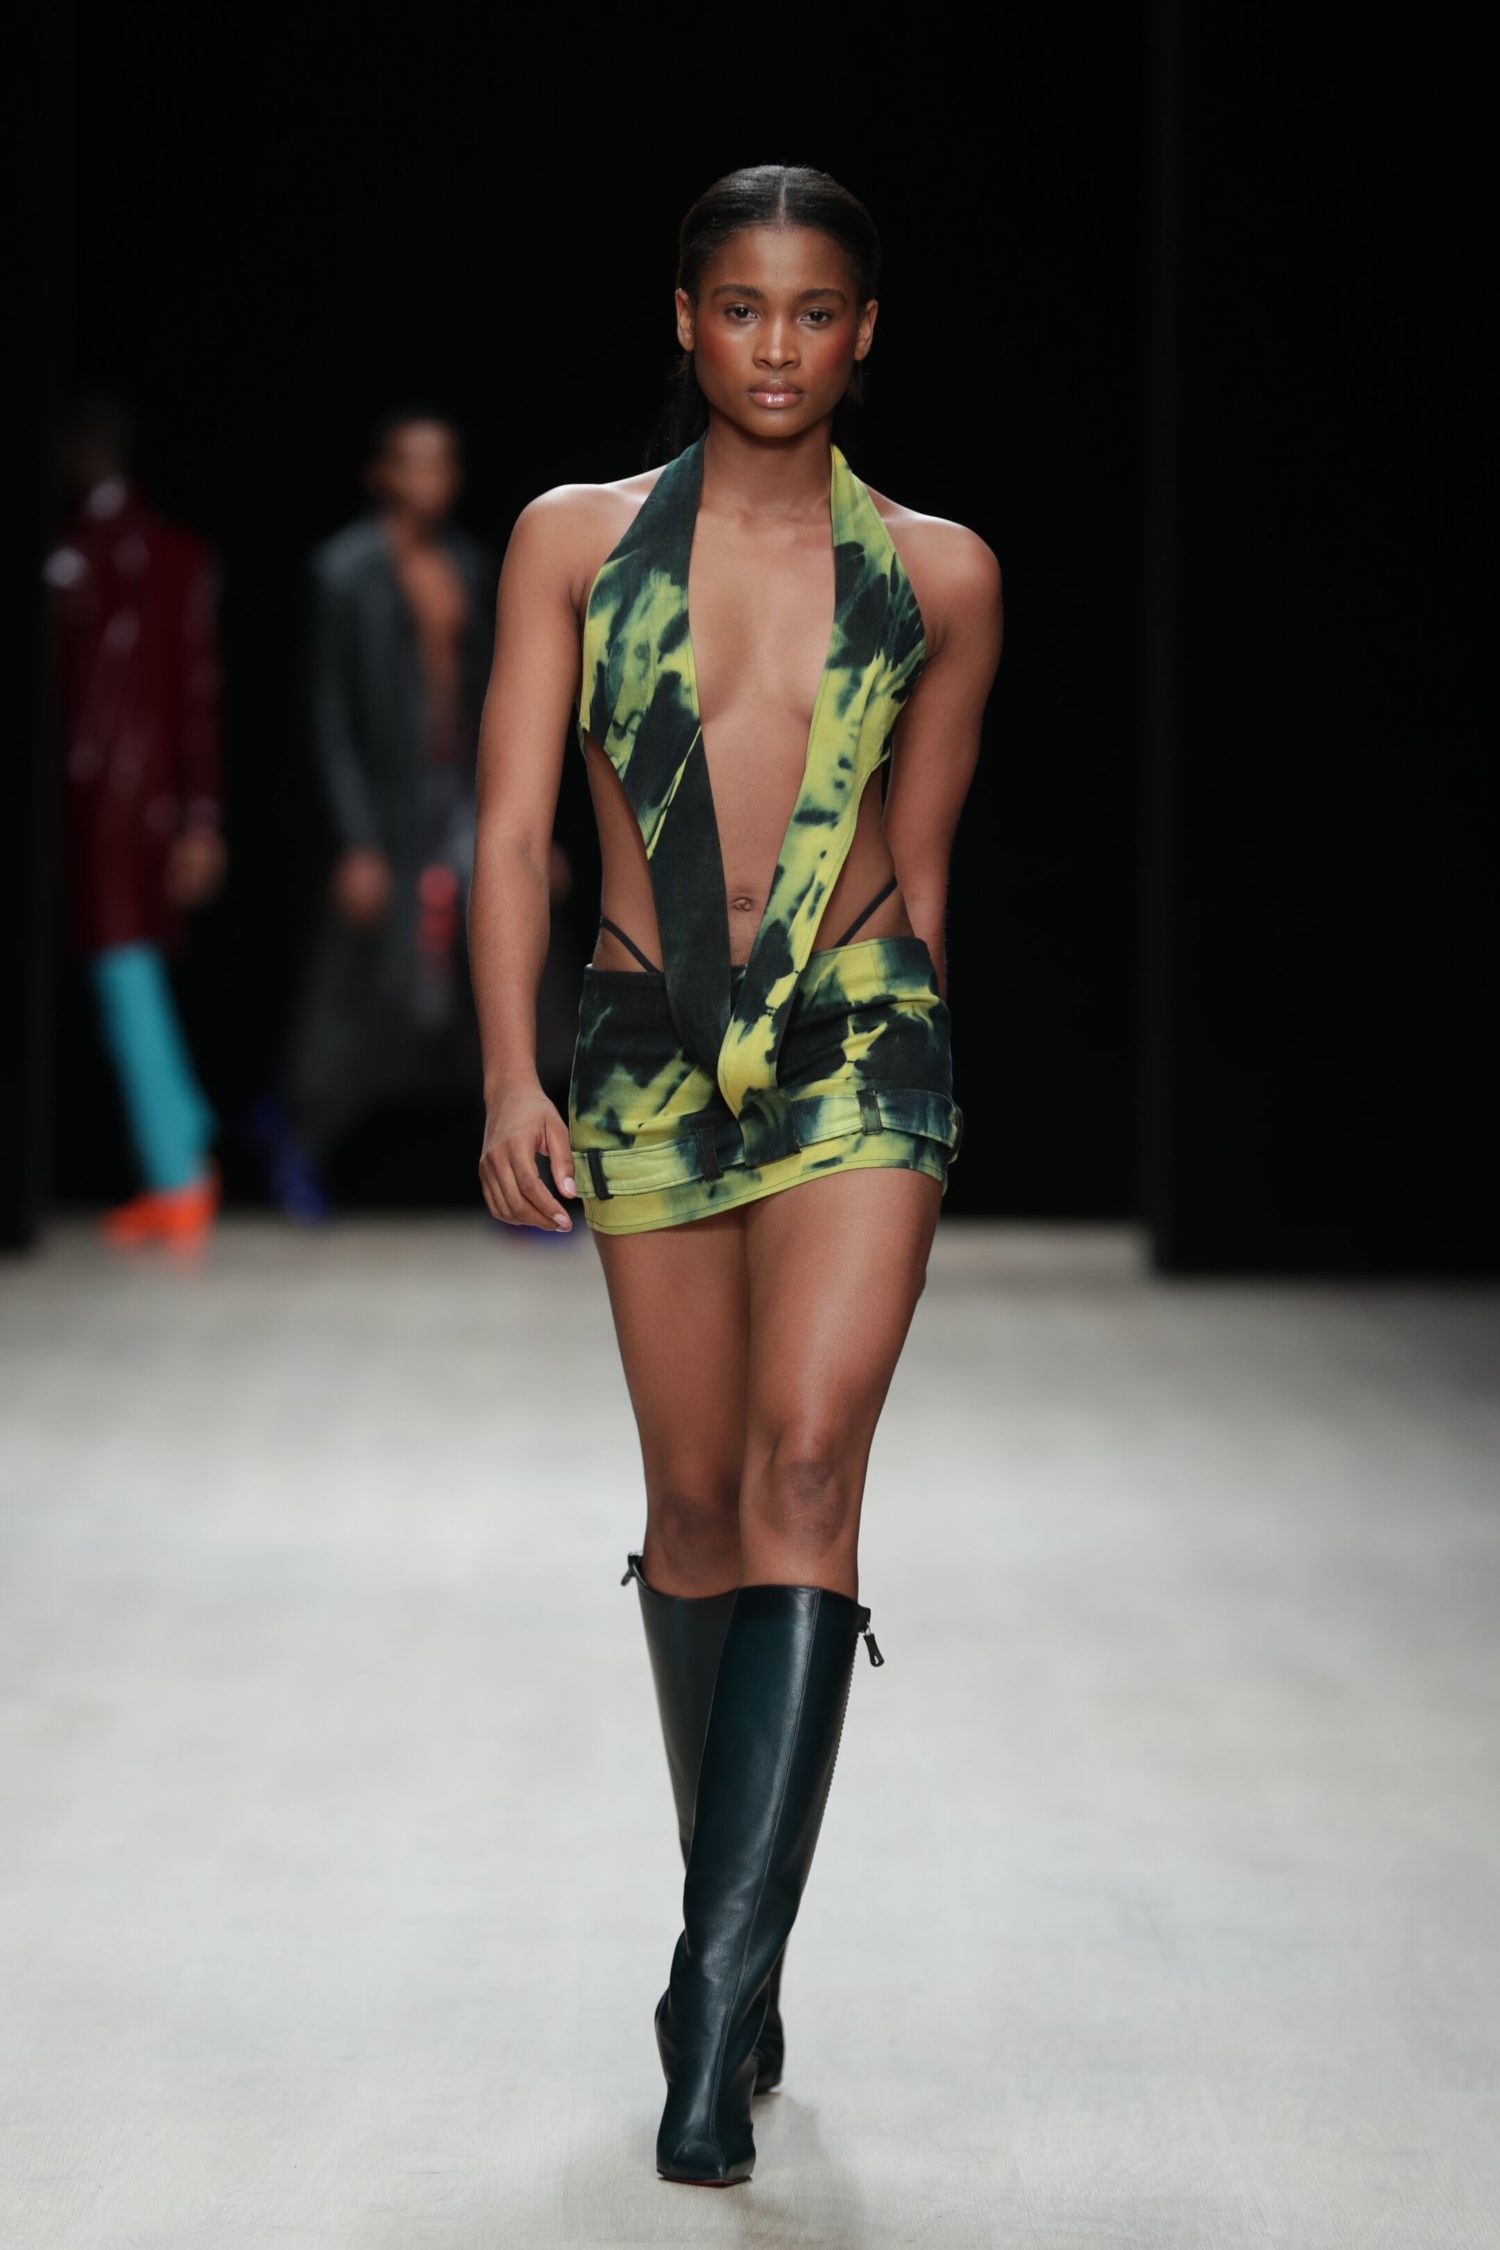 ARISE Fashion Week 2019 | Mowalola